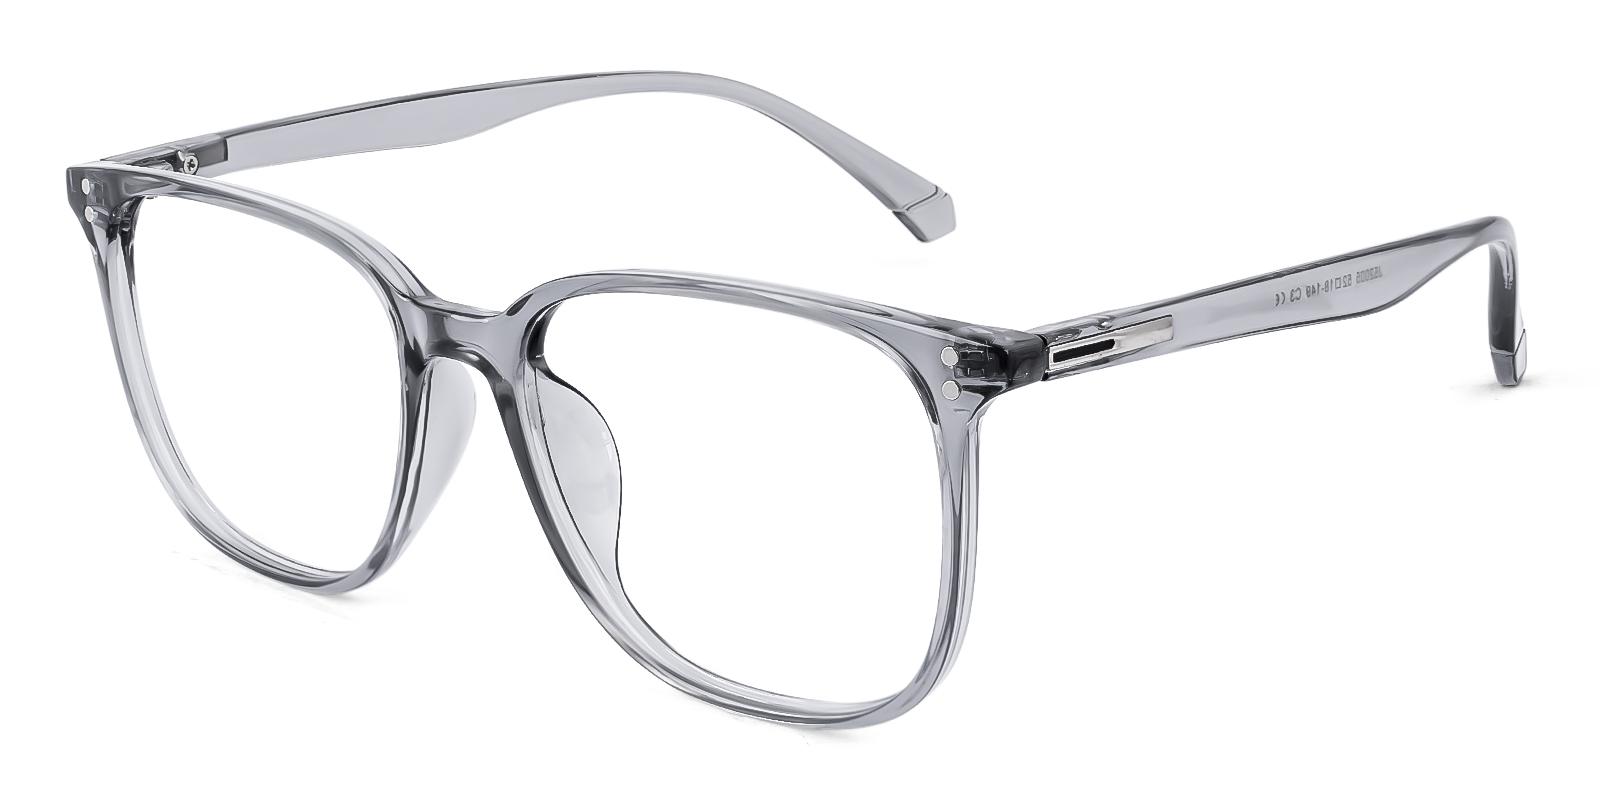 Needaster Gray Plastic Eyeglasses , UniversalBridgeFit Frames from ABBE Glasses